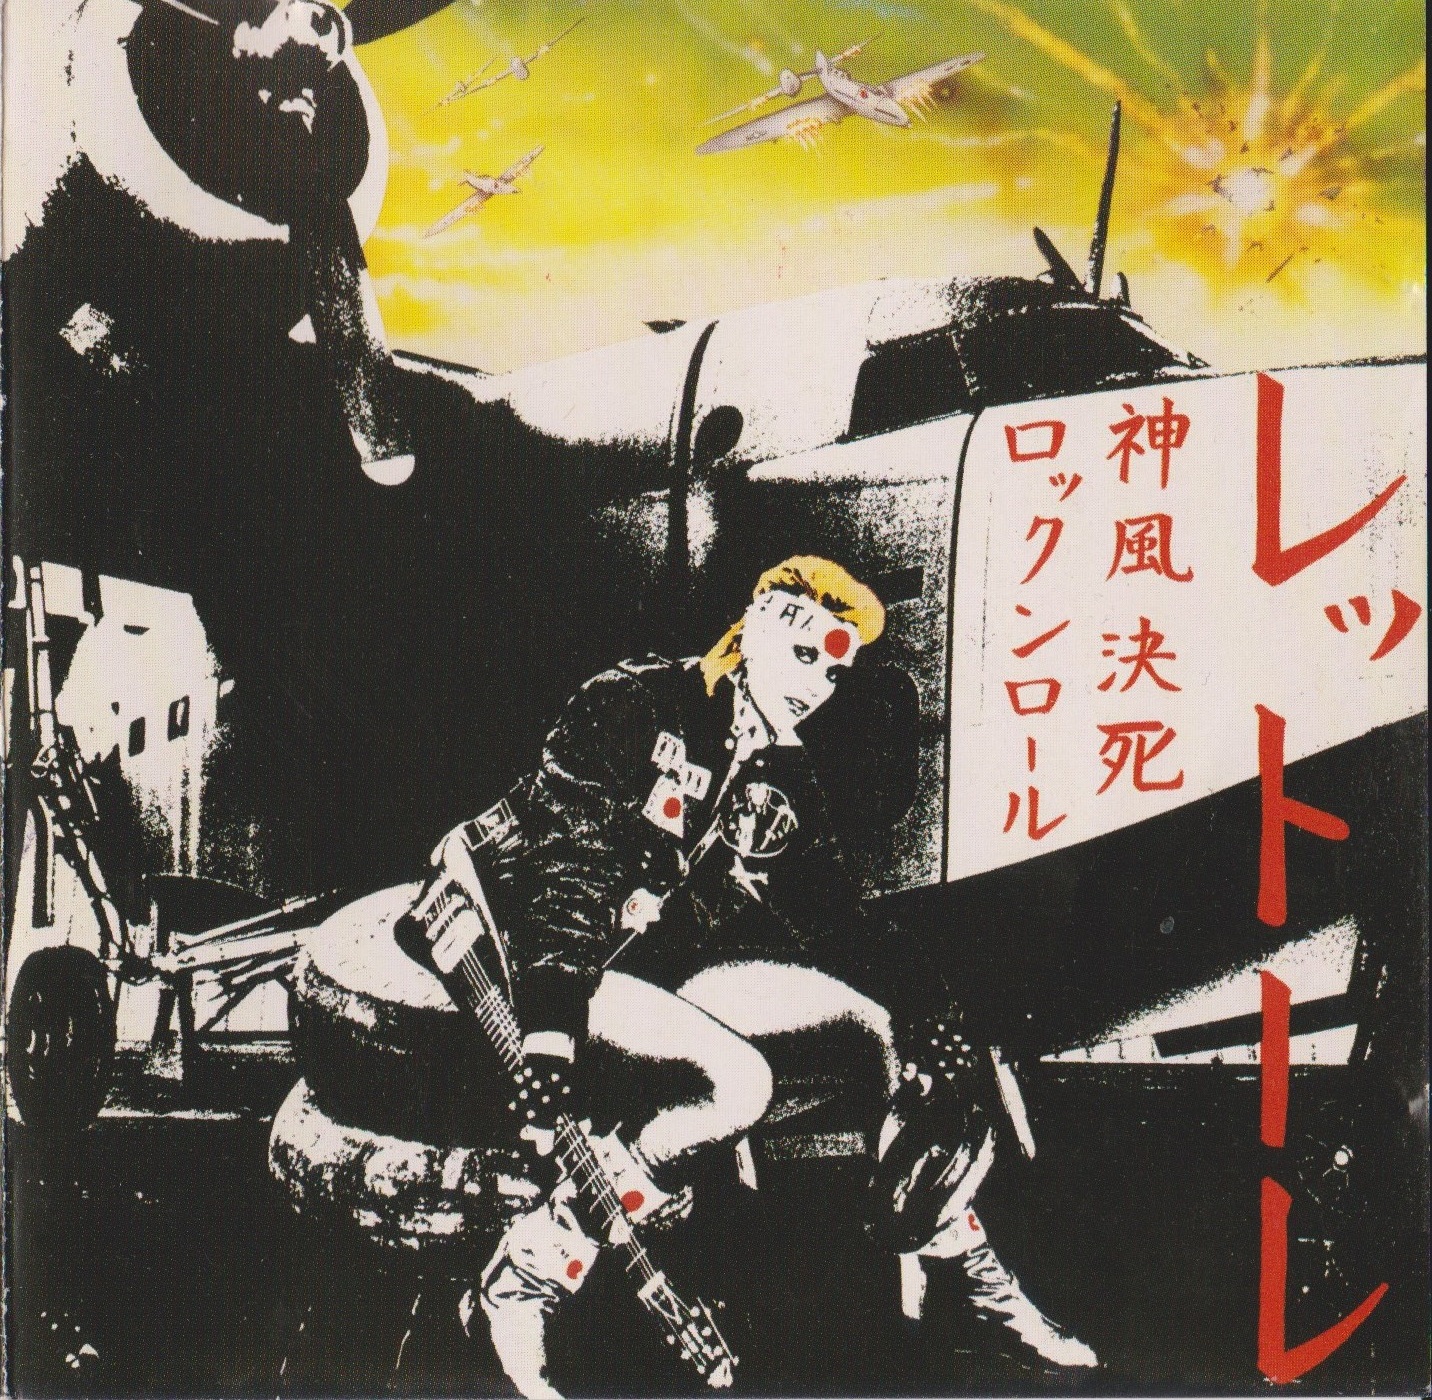 Donatella Rettore, Kamikaze Rock 'n' Roll Suicide, 1982